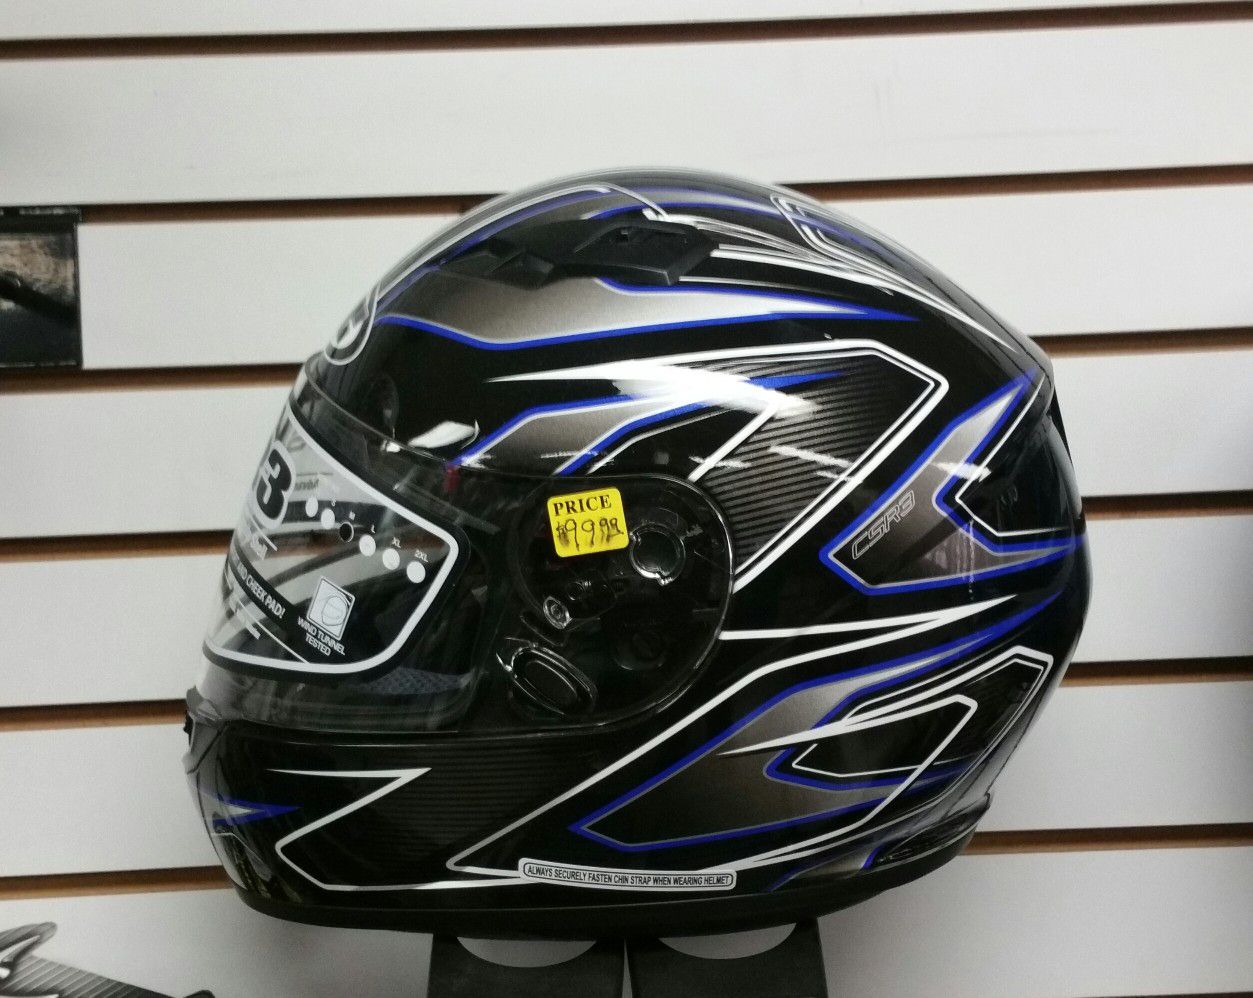 New full face helmet size medium $59